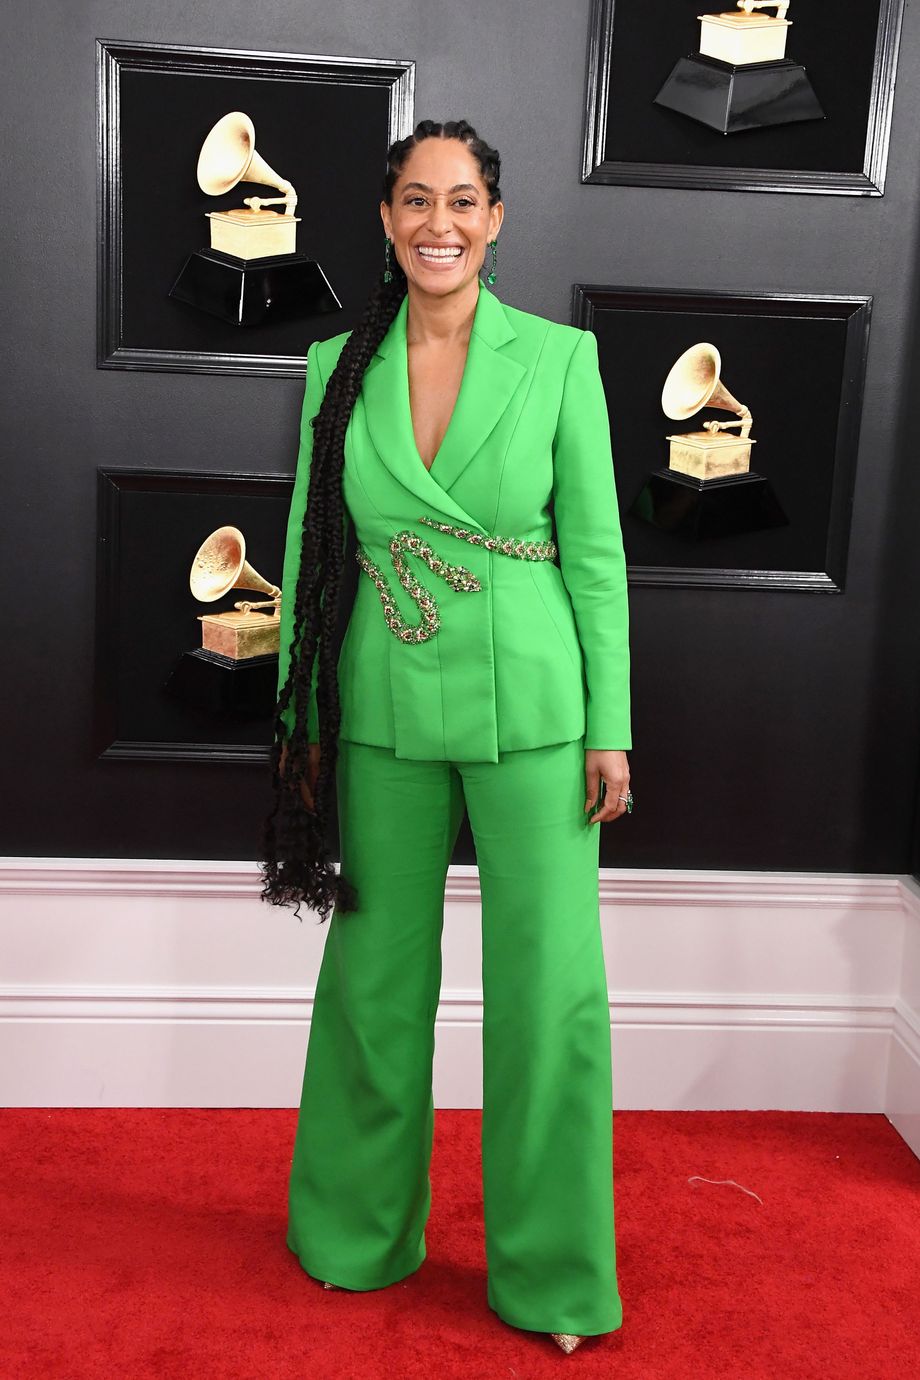 Grammys 2019: the Fashion